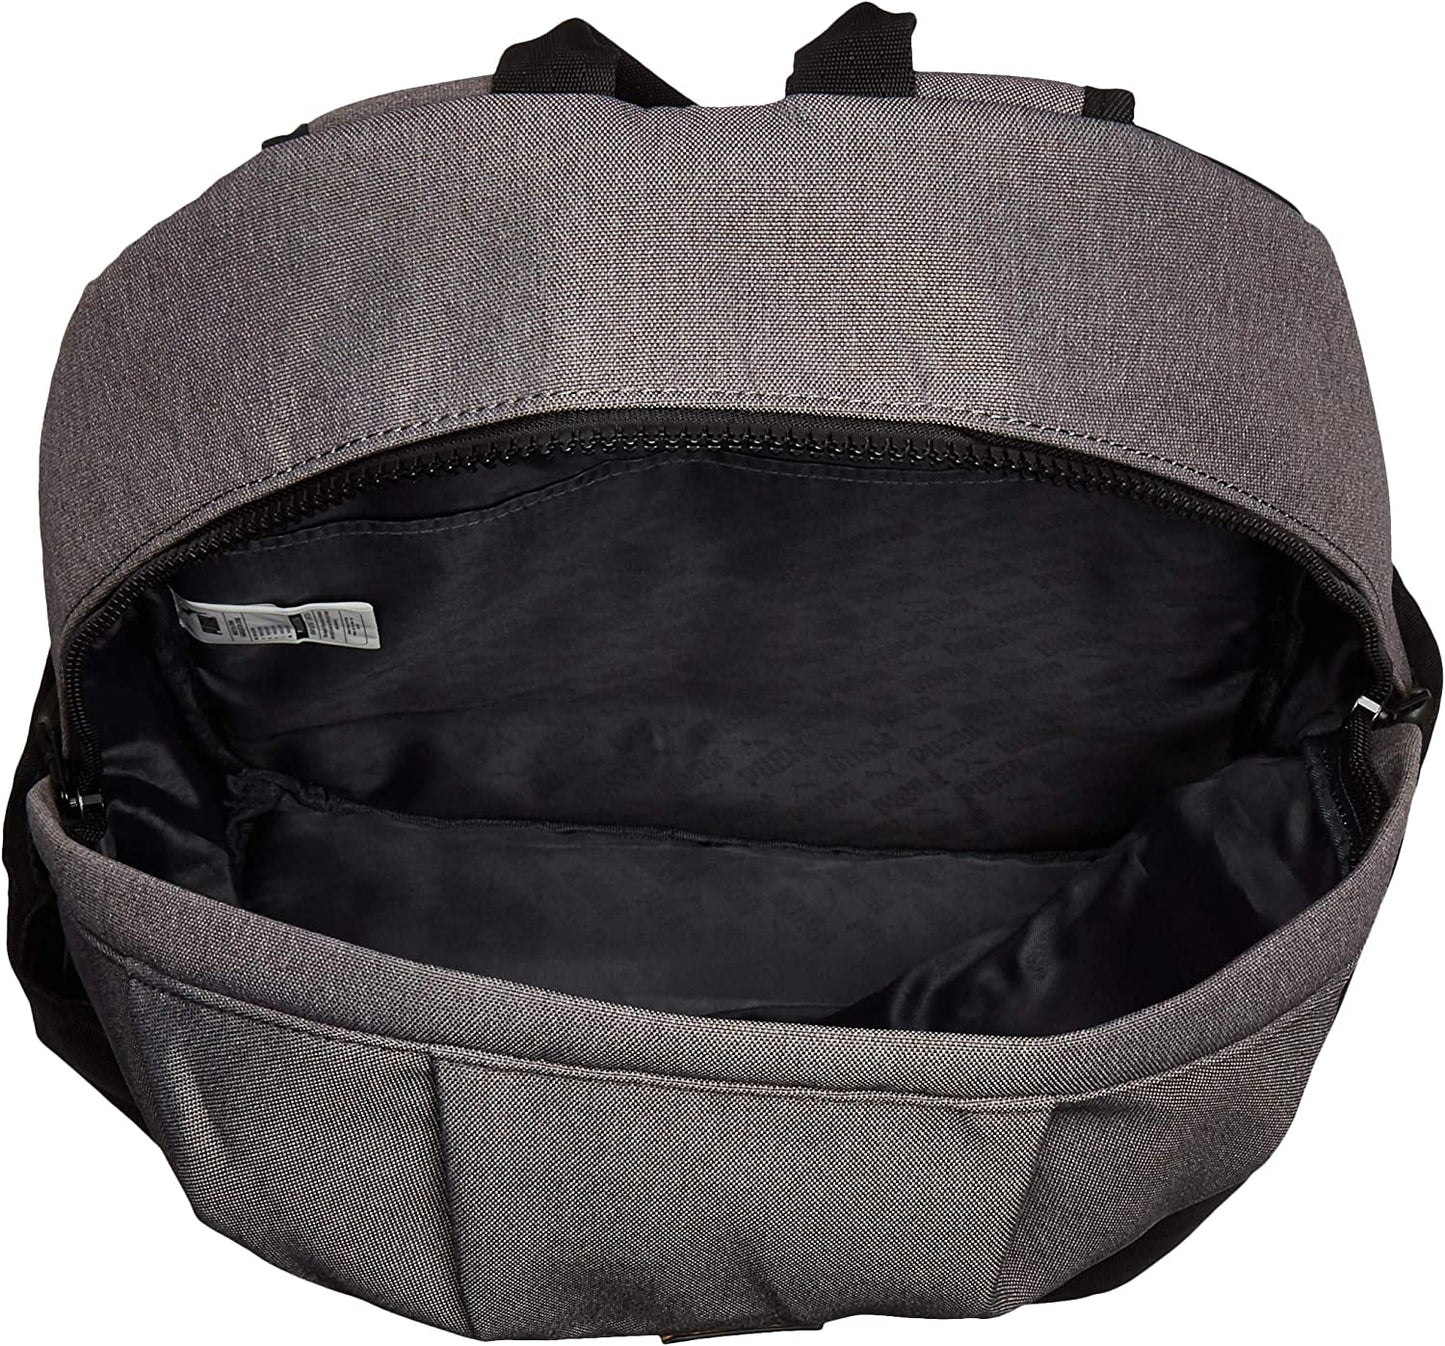 PUMA Men's Imprint Backpack, Black/Gray